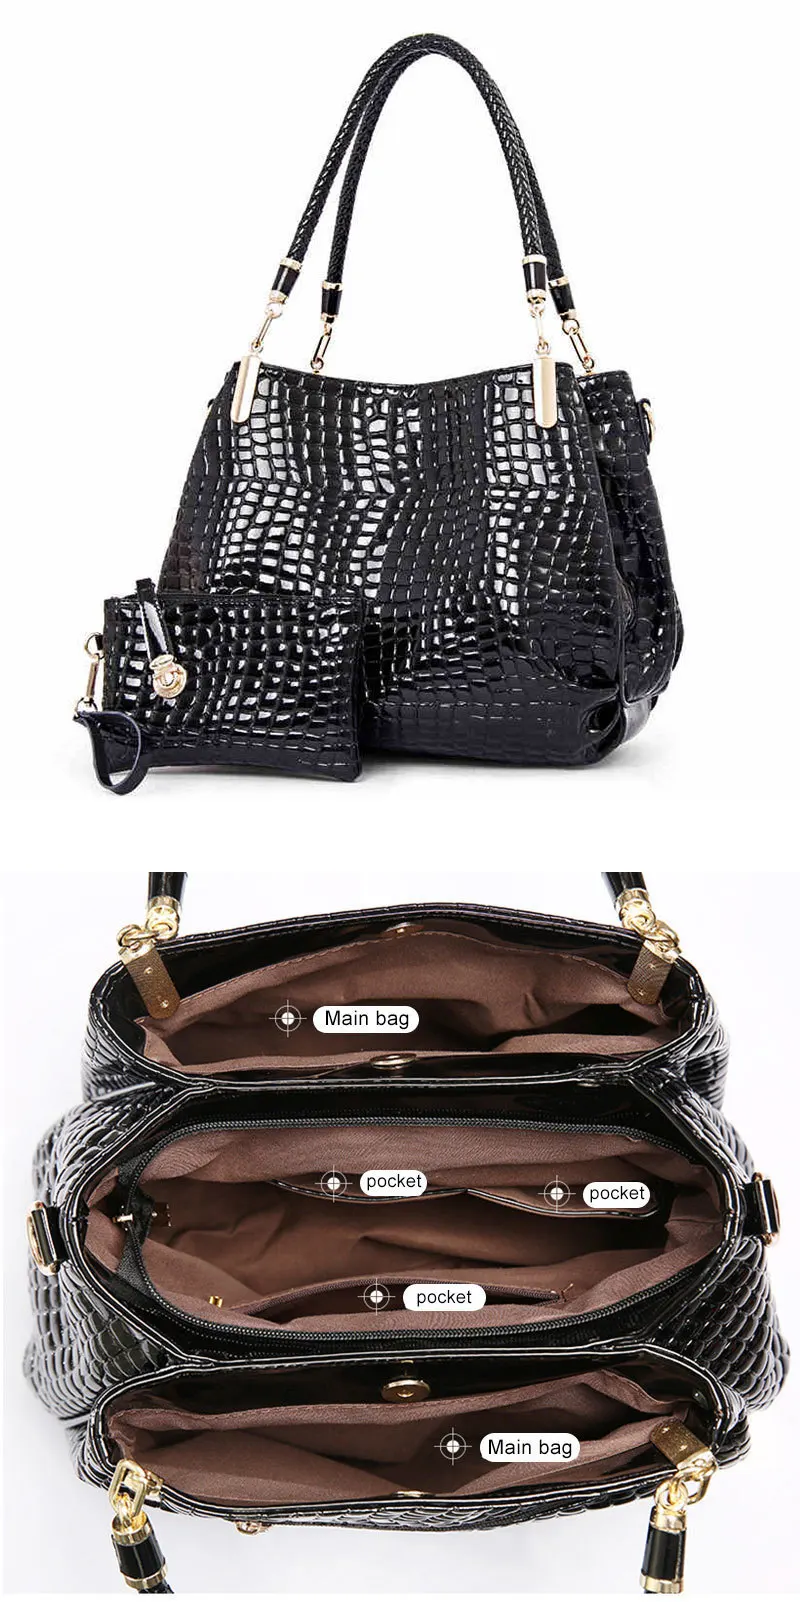 LDAJMW 2 шт./набор, новая женская сумка из искусственной кожи аллигатора, сумки на плечо, Женская вместительная сумка-клатч, кошелек